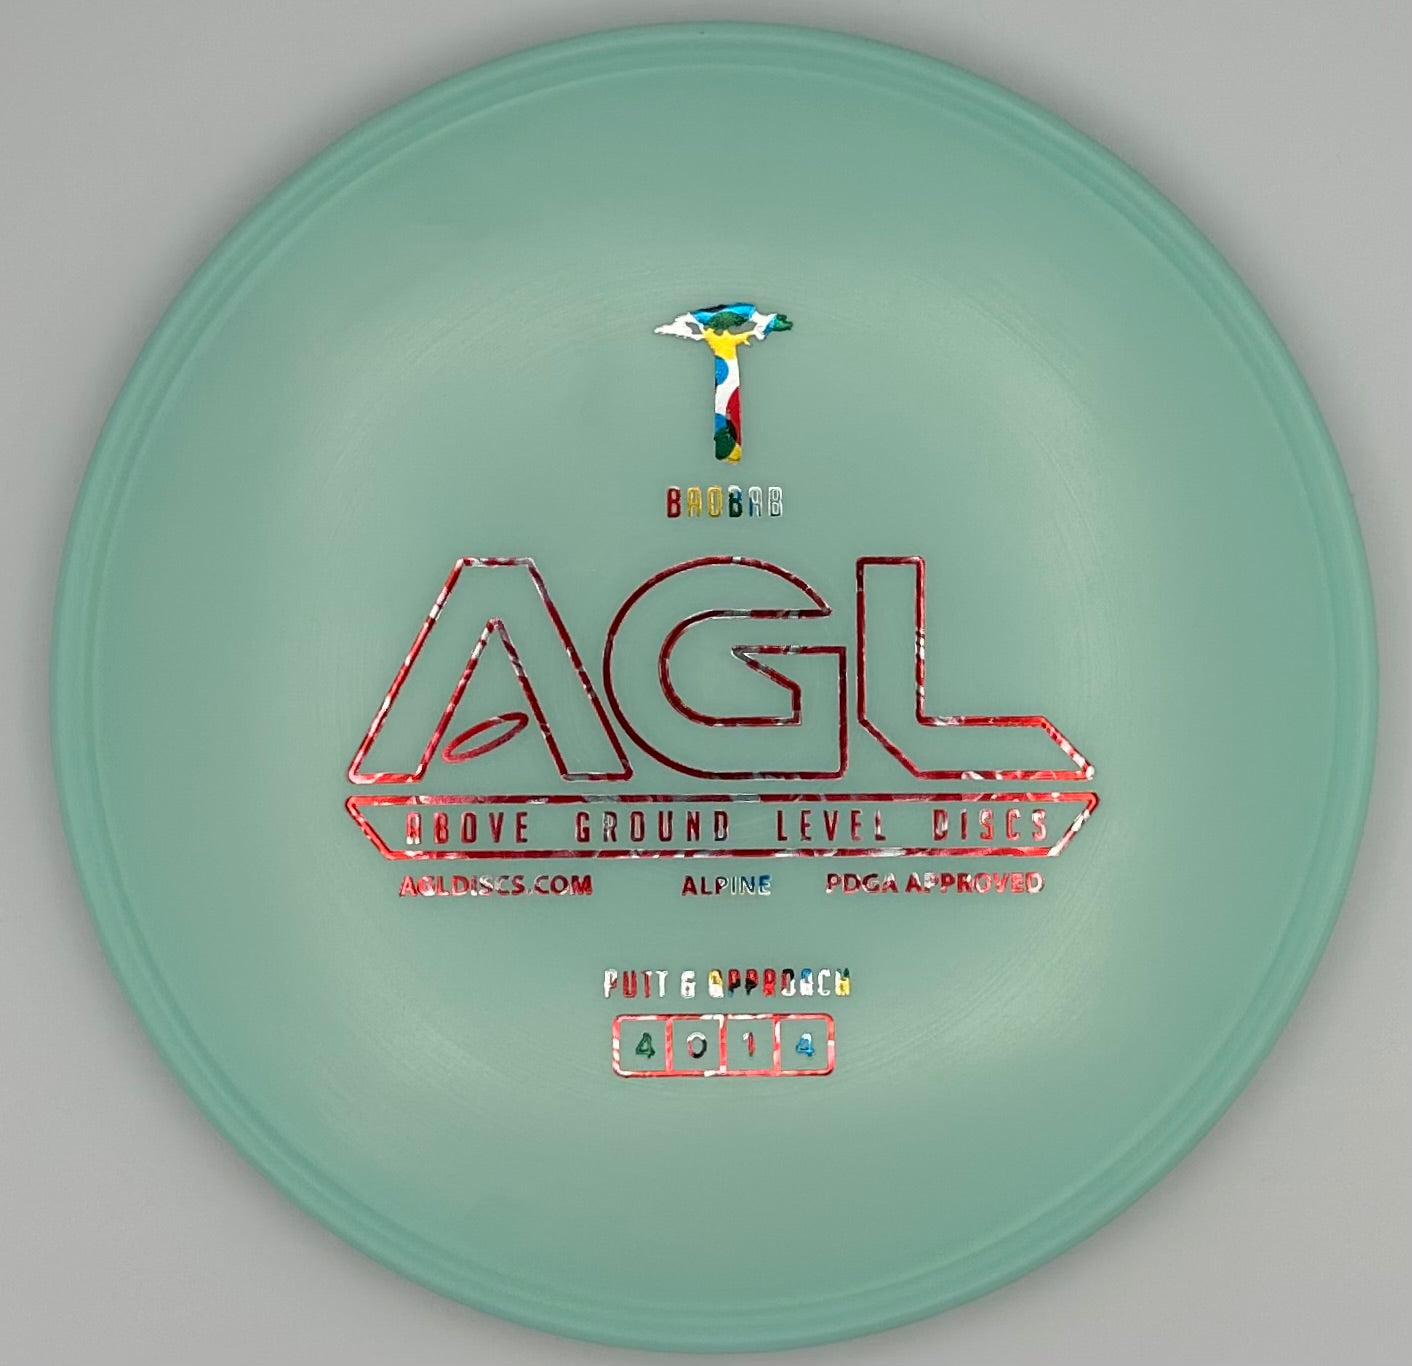 AGL Discs - Tiffany Blue Alpine Baobab (AGL Bar Stamp)